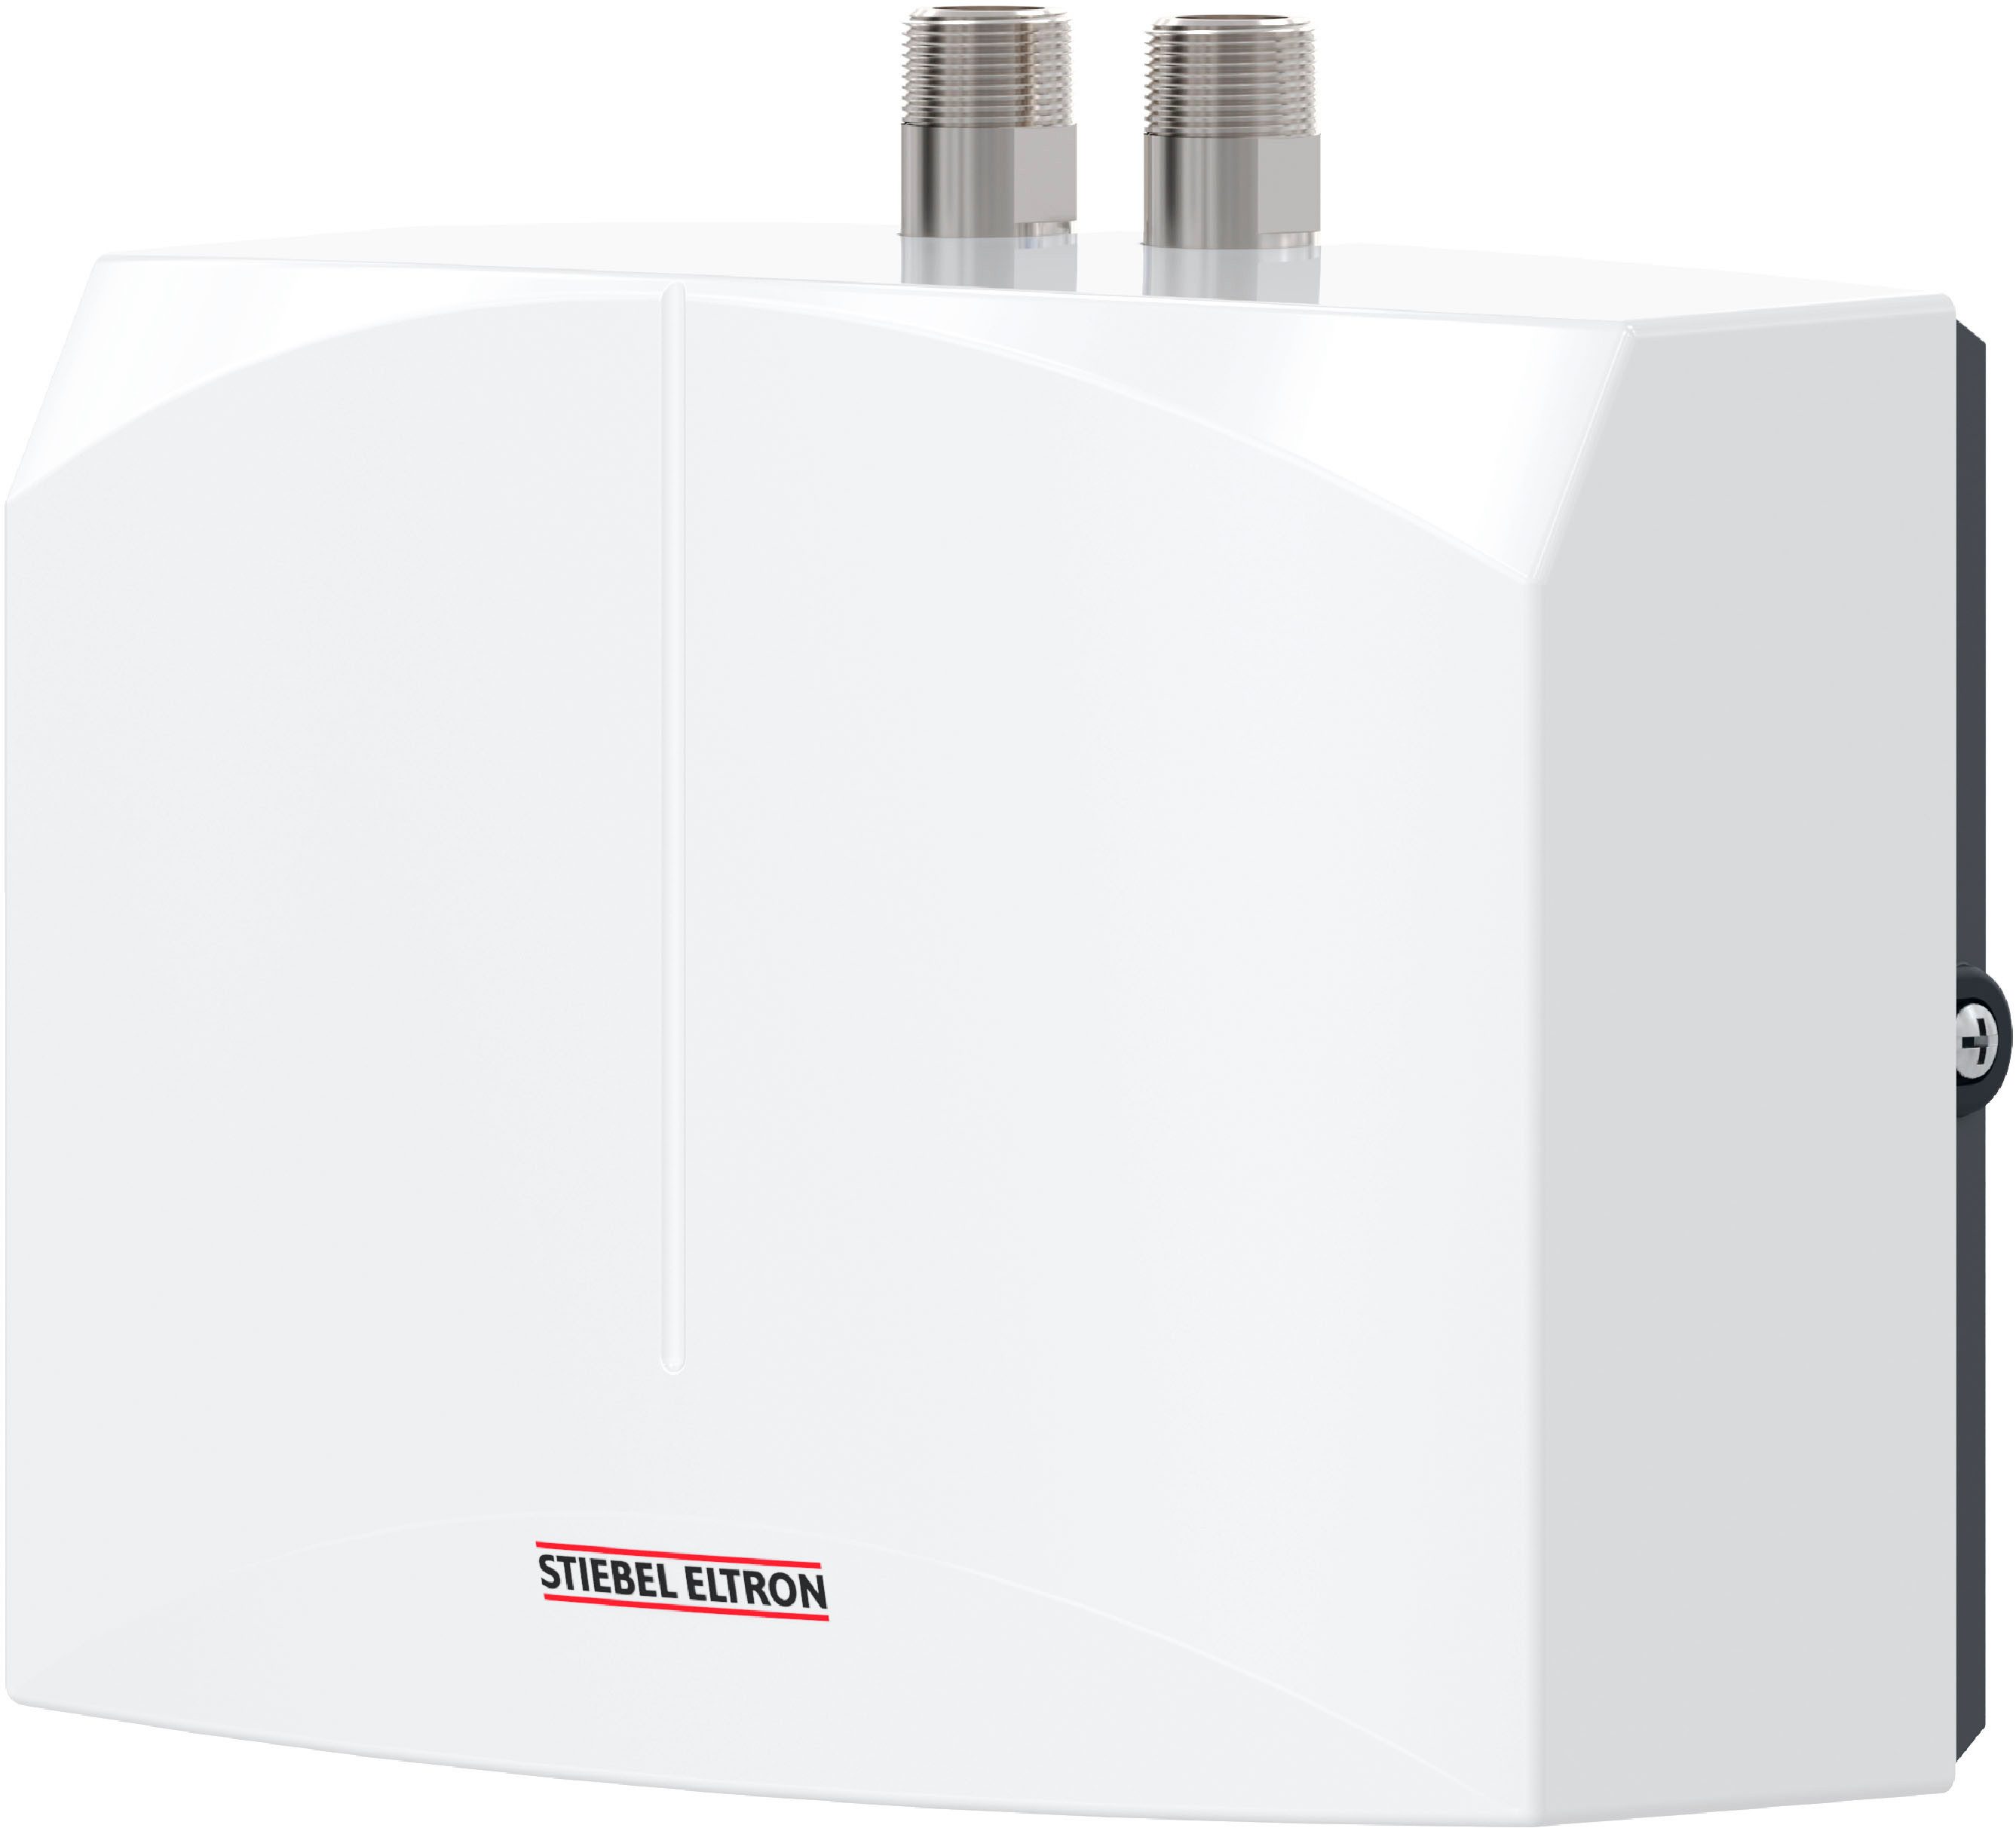 STIEBEL ELTRON Klein-Durchlauferhitzer DNM 3 für Handwaschbecken, 3,5 kW, mit Stecker, hydraulisch, sofort lauwarmes Wasser (ca. 35°C), steckerfertig